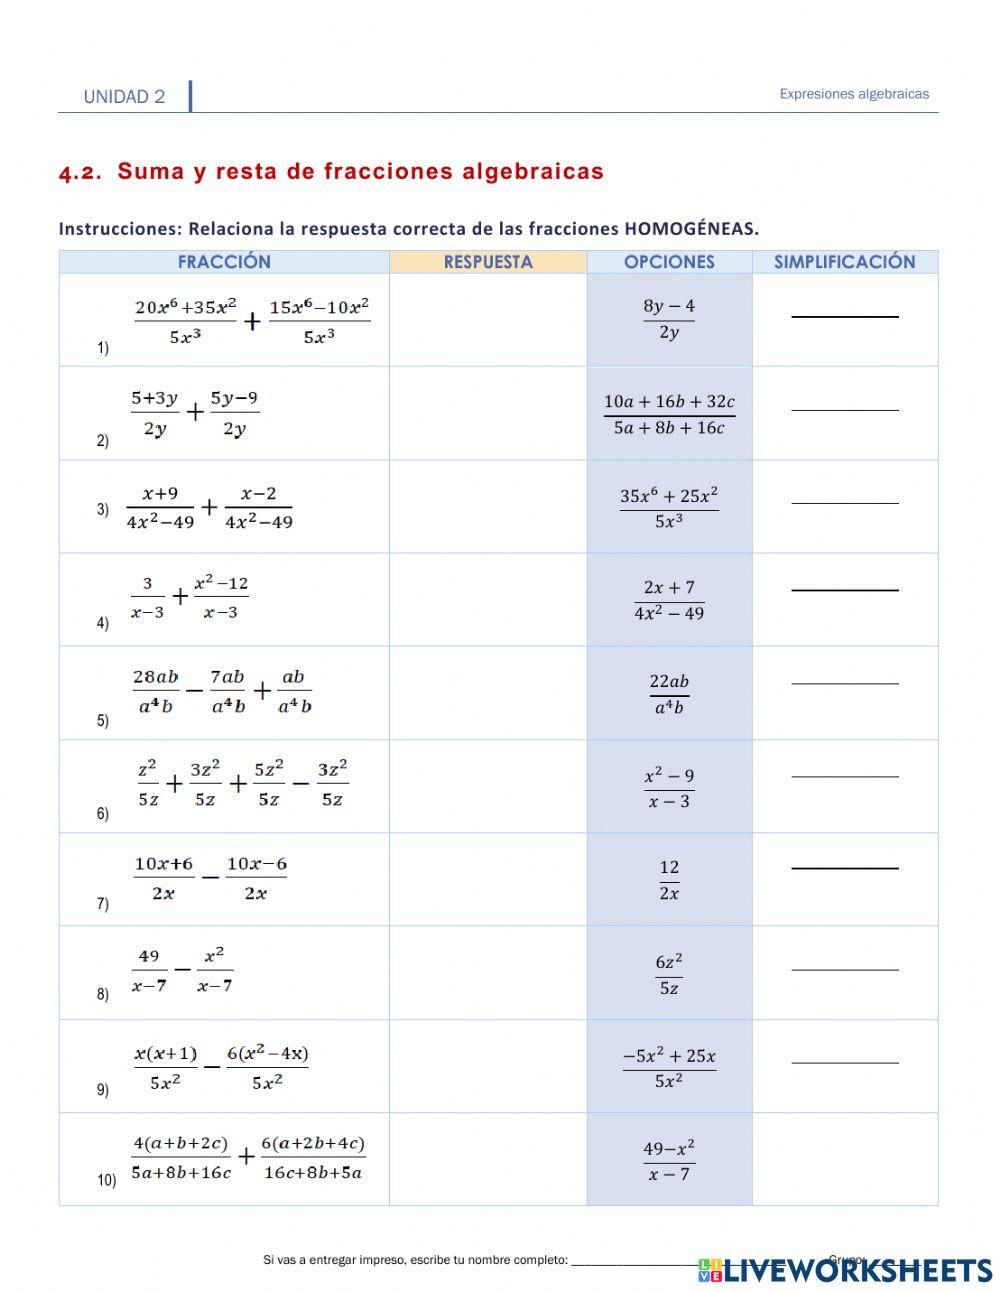 II.4.2. Suma y resta de fracciones algebraicas